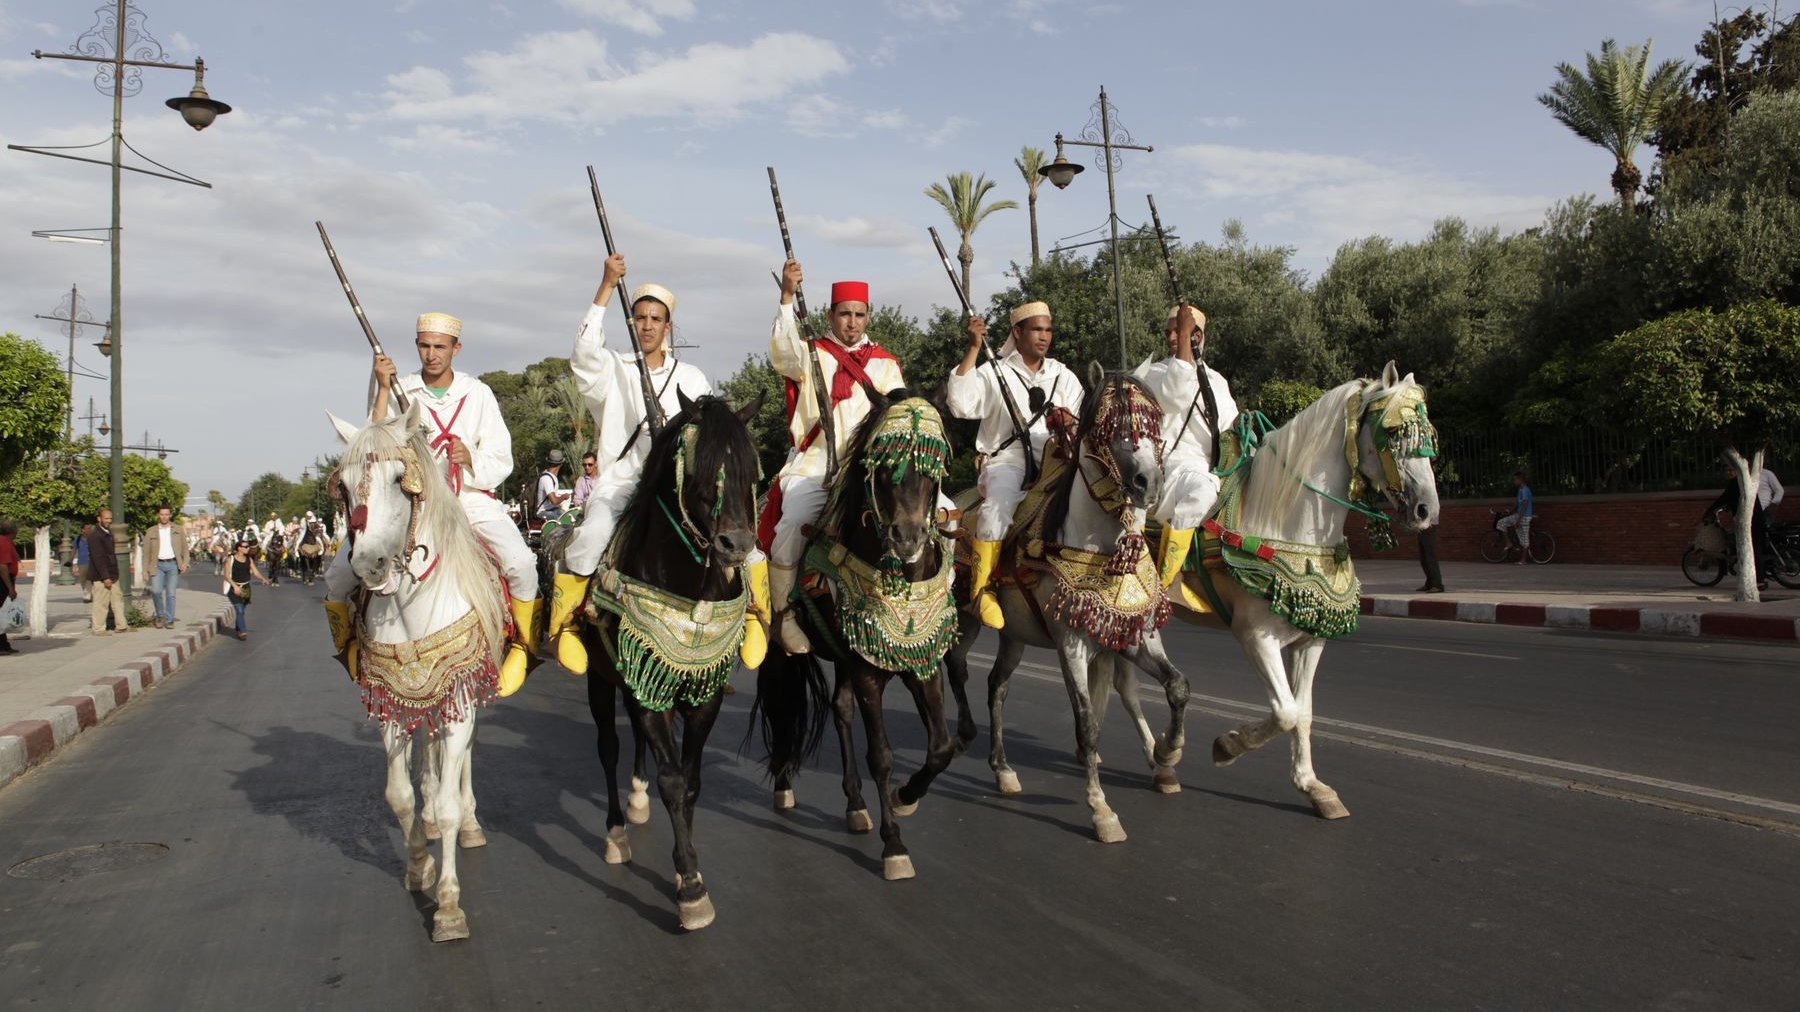 On ne peut évoquer les chevaux, au Maroc, sans parler des maîtres de cet art équestre séculaire qu'est la tbourida. Les cavaliers, tout de blanc vêtus, ont défilé sur leurs superbes montures richement harnachées rouge, vert et or. 
